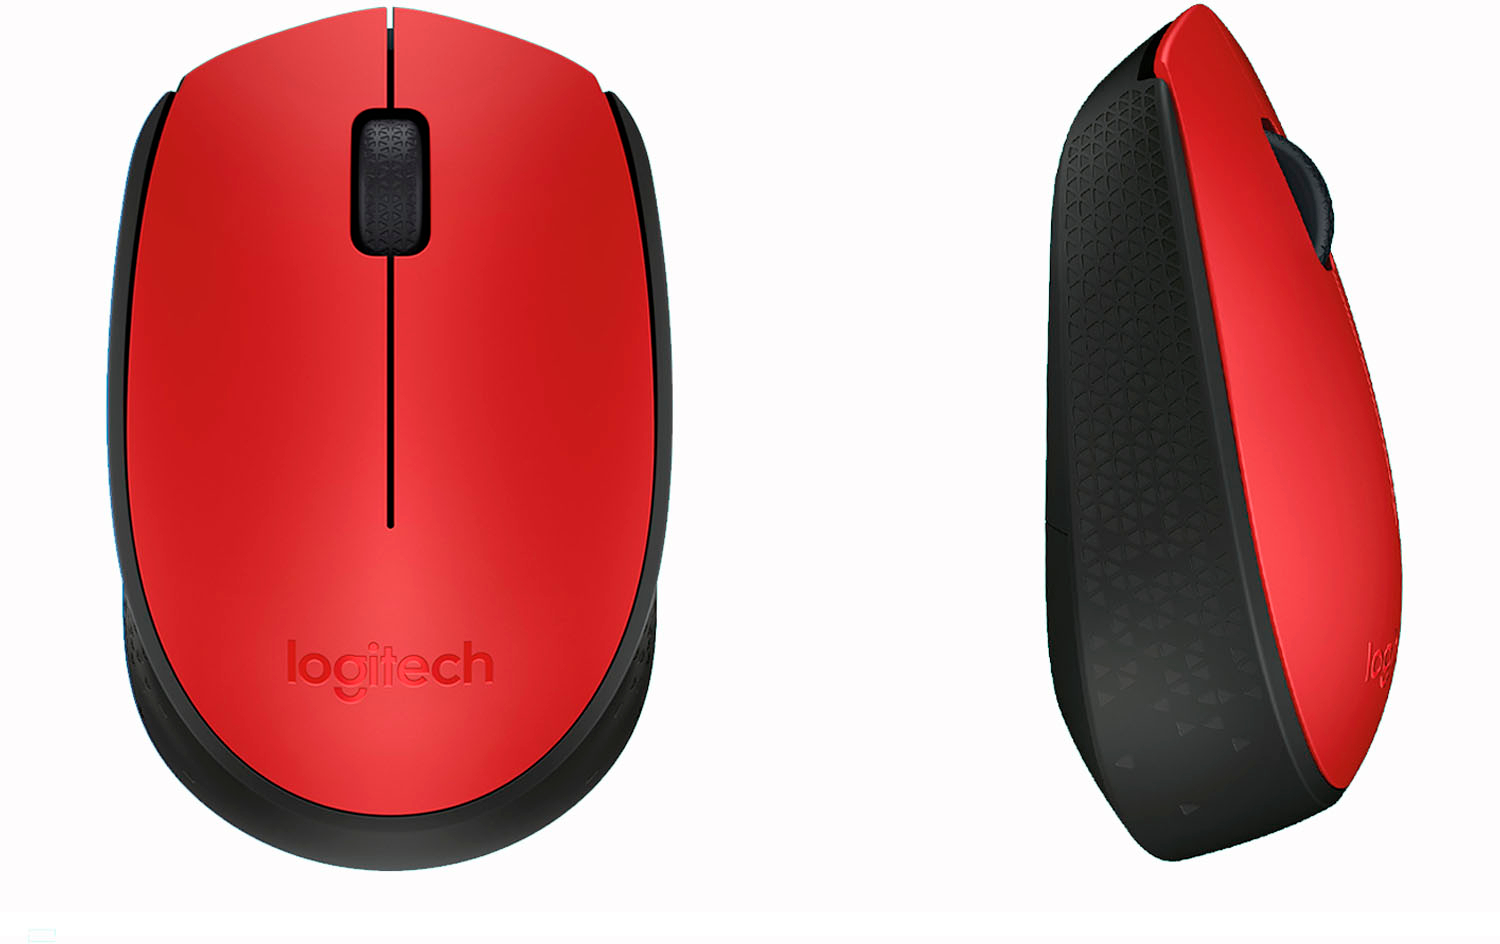 Logitech M190 USB Wireless Fullsize Mouse - Red